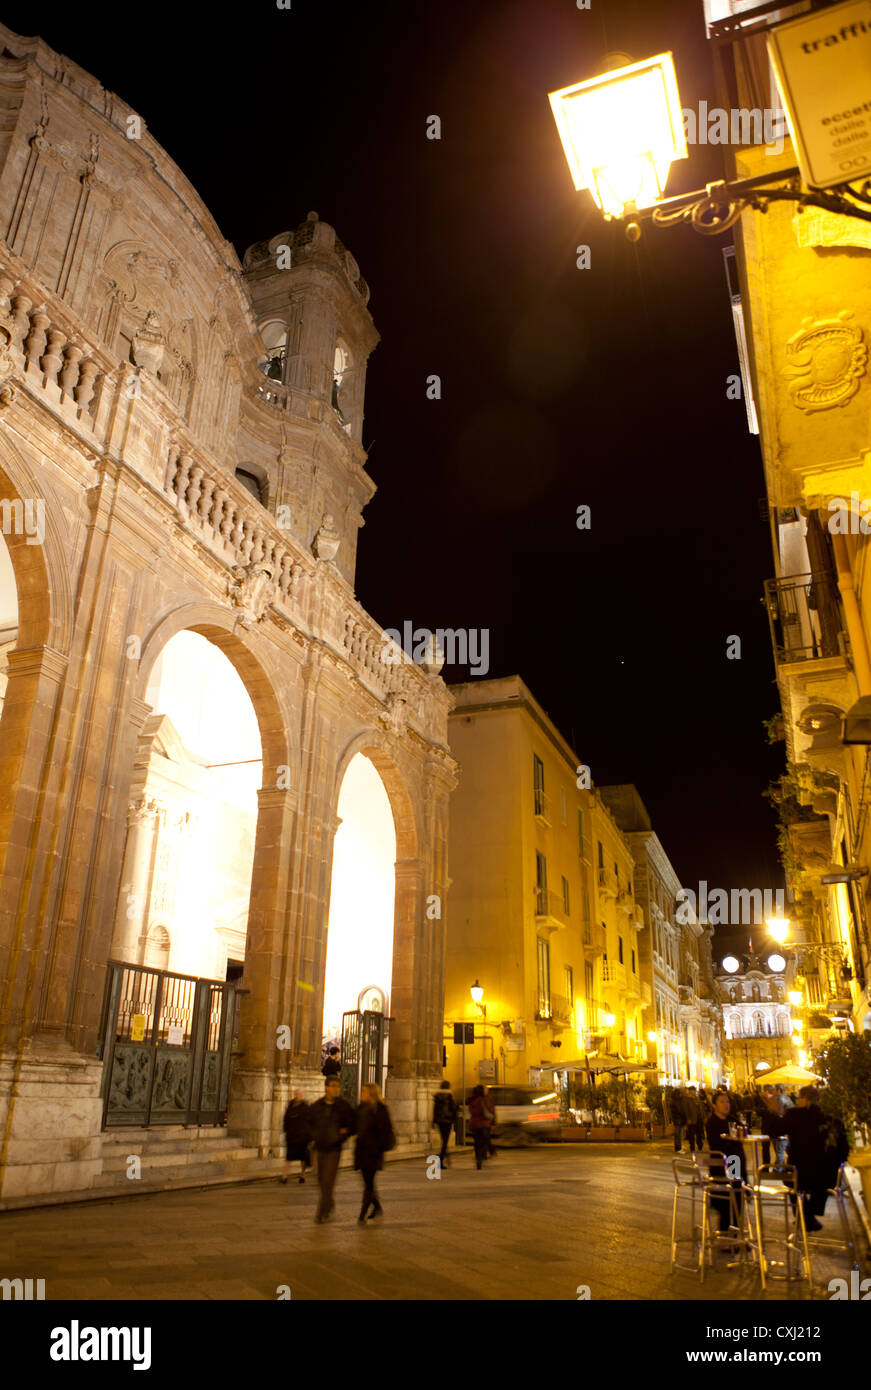 Ancienne scène de rue, Trapani, Sicile, Italie Banque D'Images